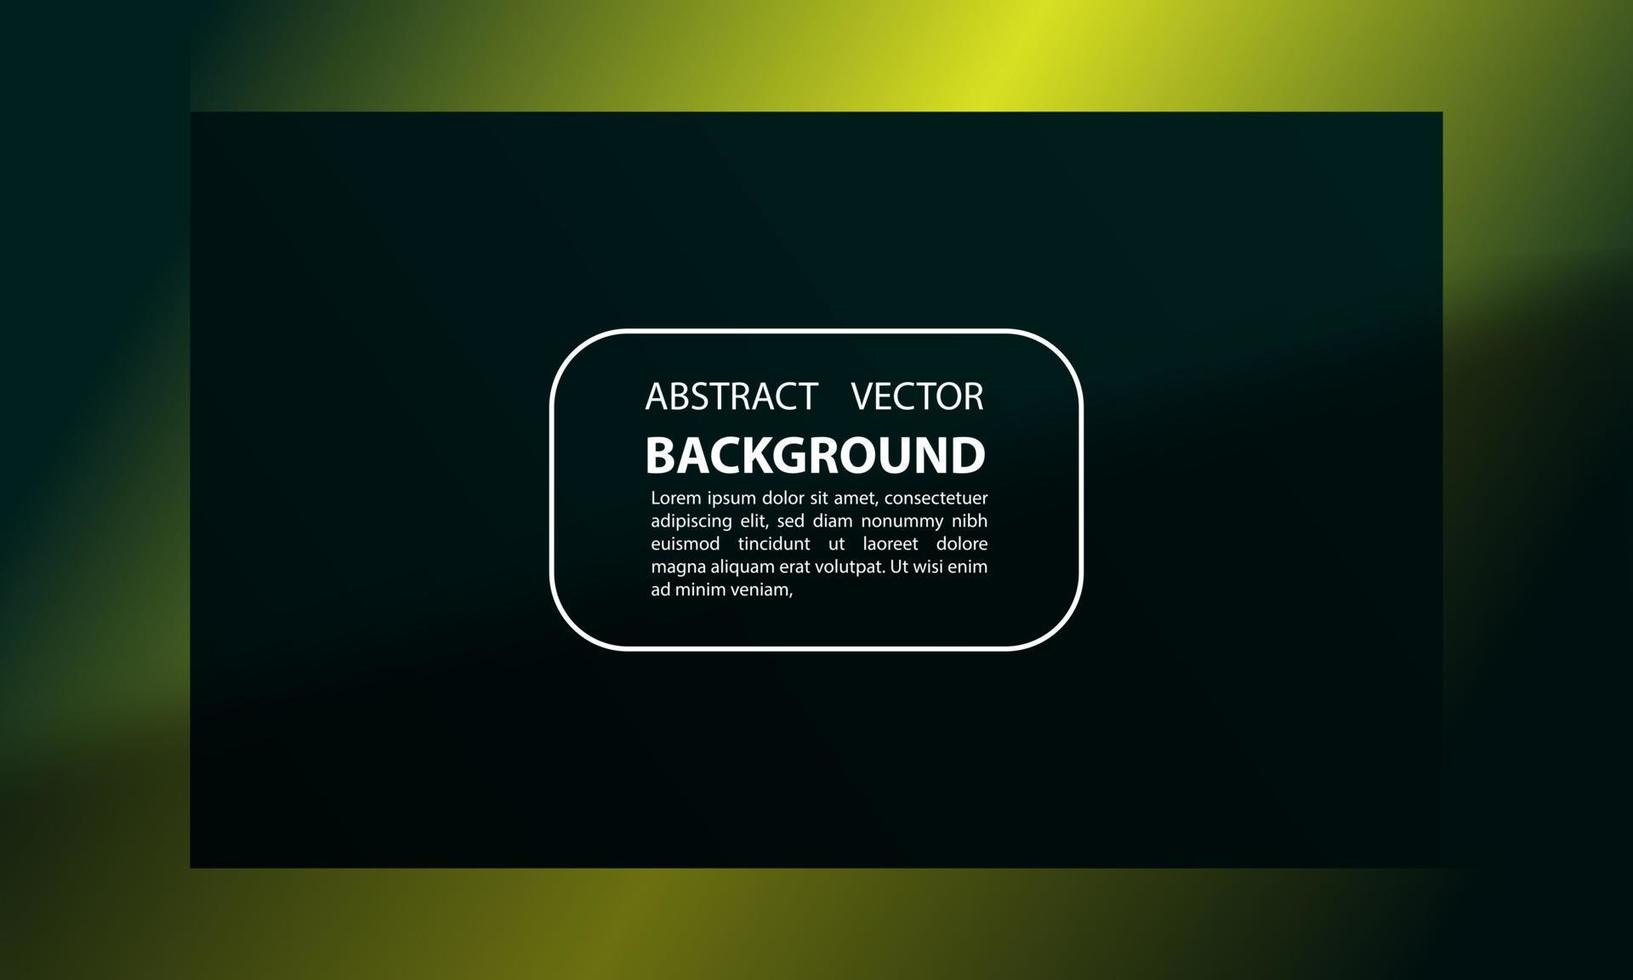 abstracte achtergrond geometrische gradiënt schaduw overlay smaragd groene en gele kleuren met moderne trendy futuristische stijl voor posters, banners, vector design eps 10